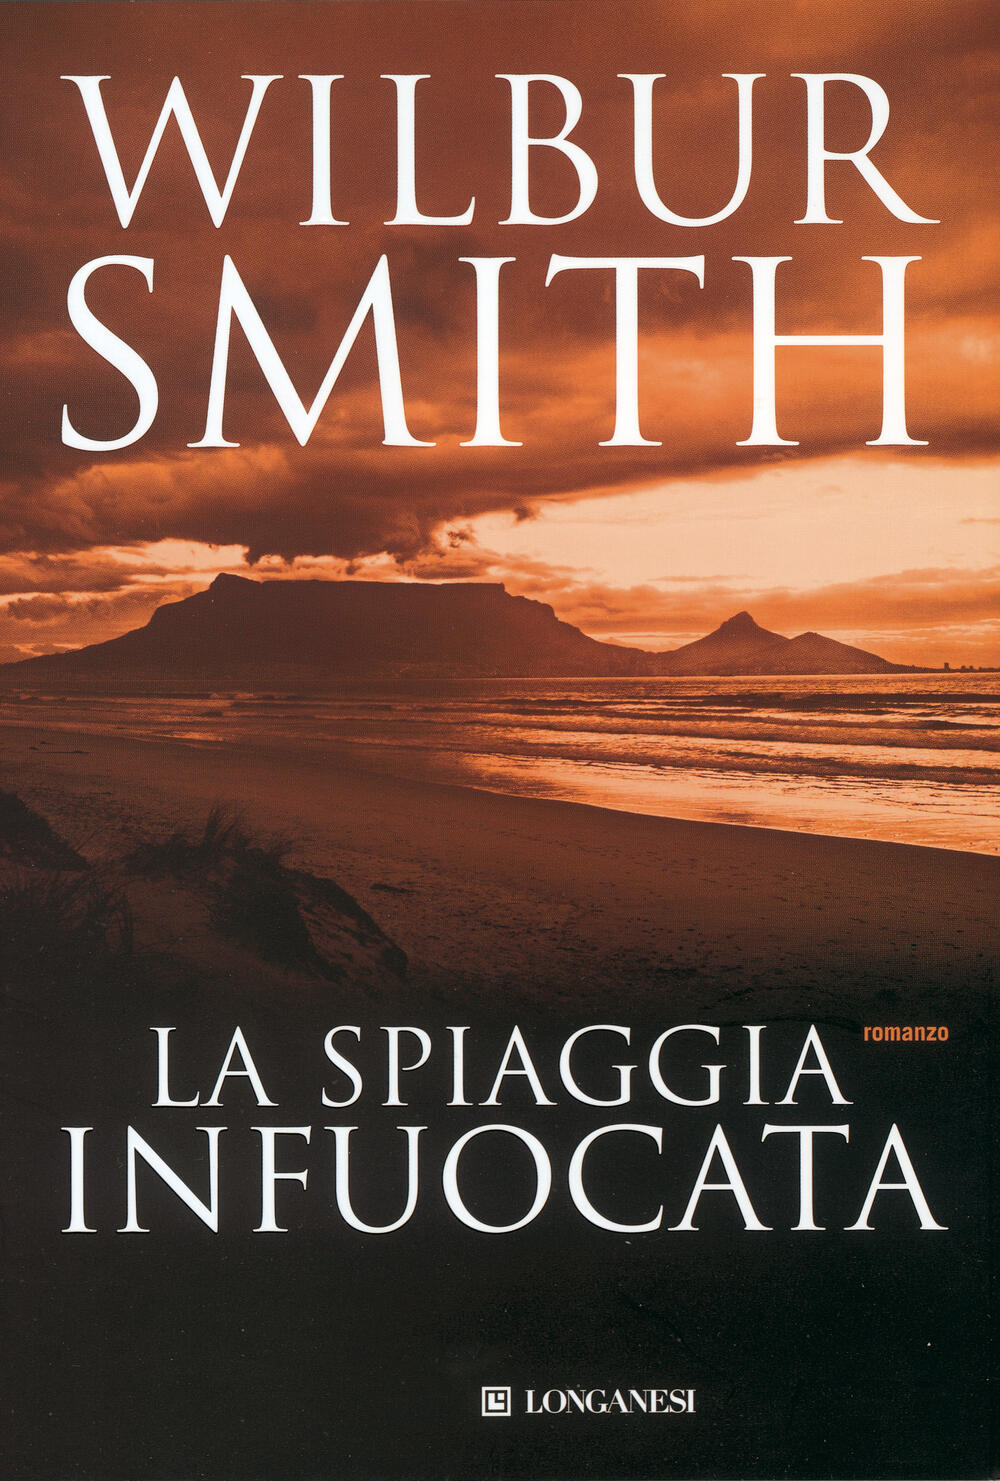 Easy to understand Interpreter widower LA SPIAGGIA INFUOCATA" di Wilbur Smith - LA GAJA SCIENZA - Il Libraio